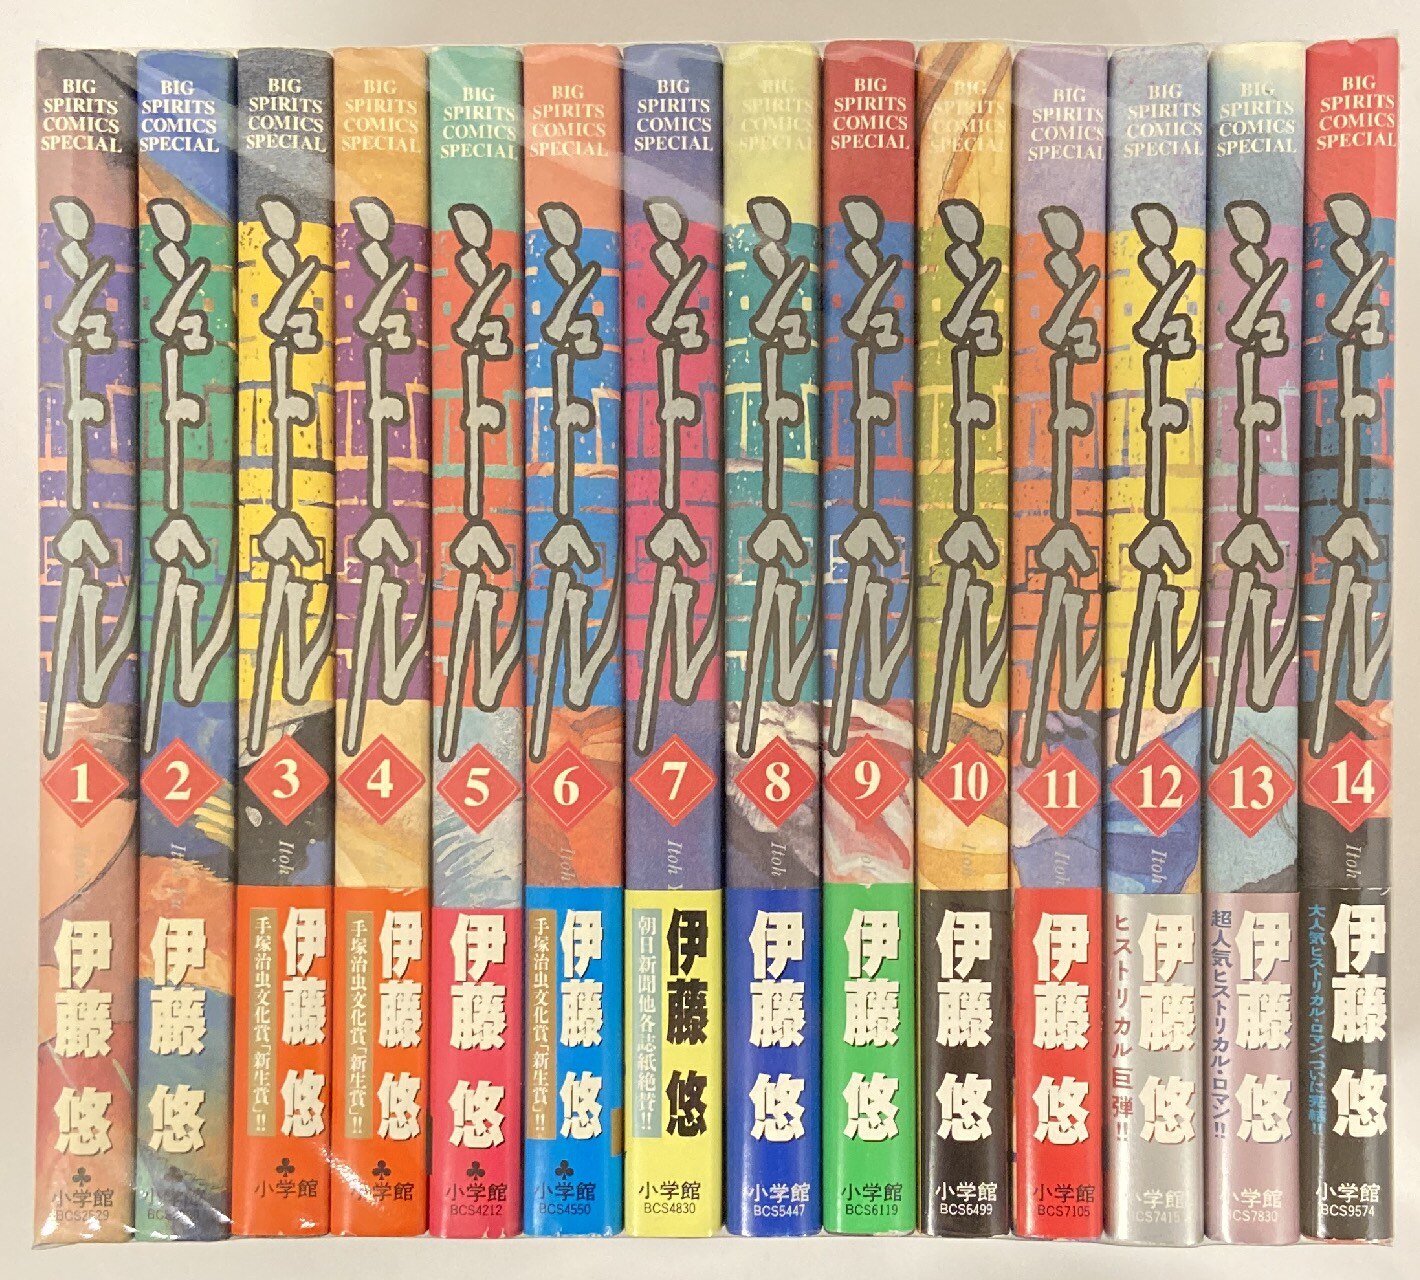 小学館 ビッグコミックススペシャル 伊藤悠 シュトヘル 全14巻 セット